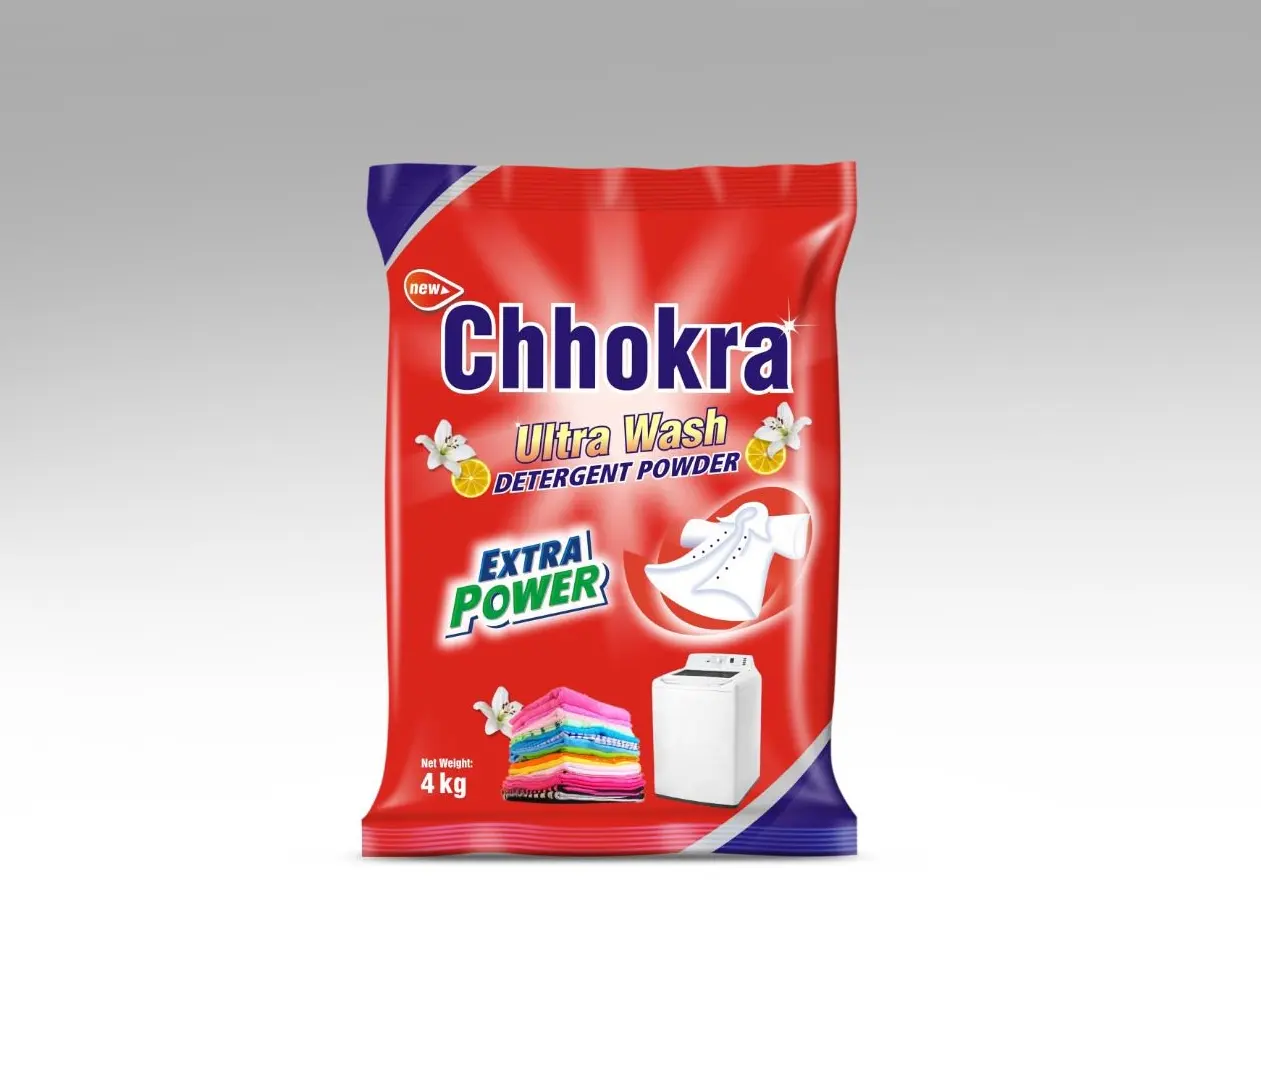 Polvo de detergente para ropa de lavado a máquina Chhokra Ultra Wash en polvo con potencia adicional Detergente para ropa de limpieza profunda en polvo